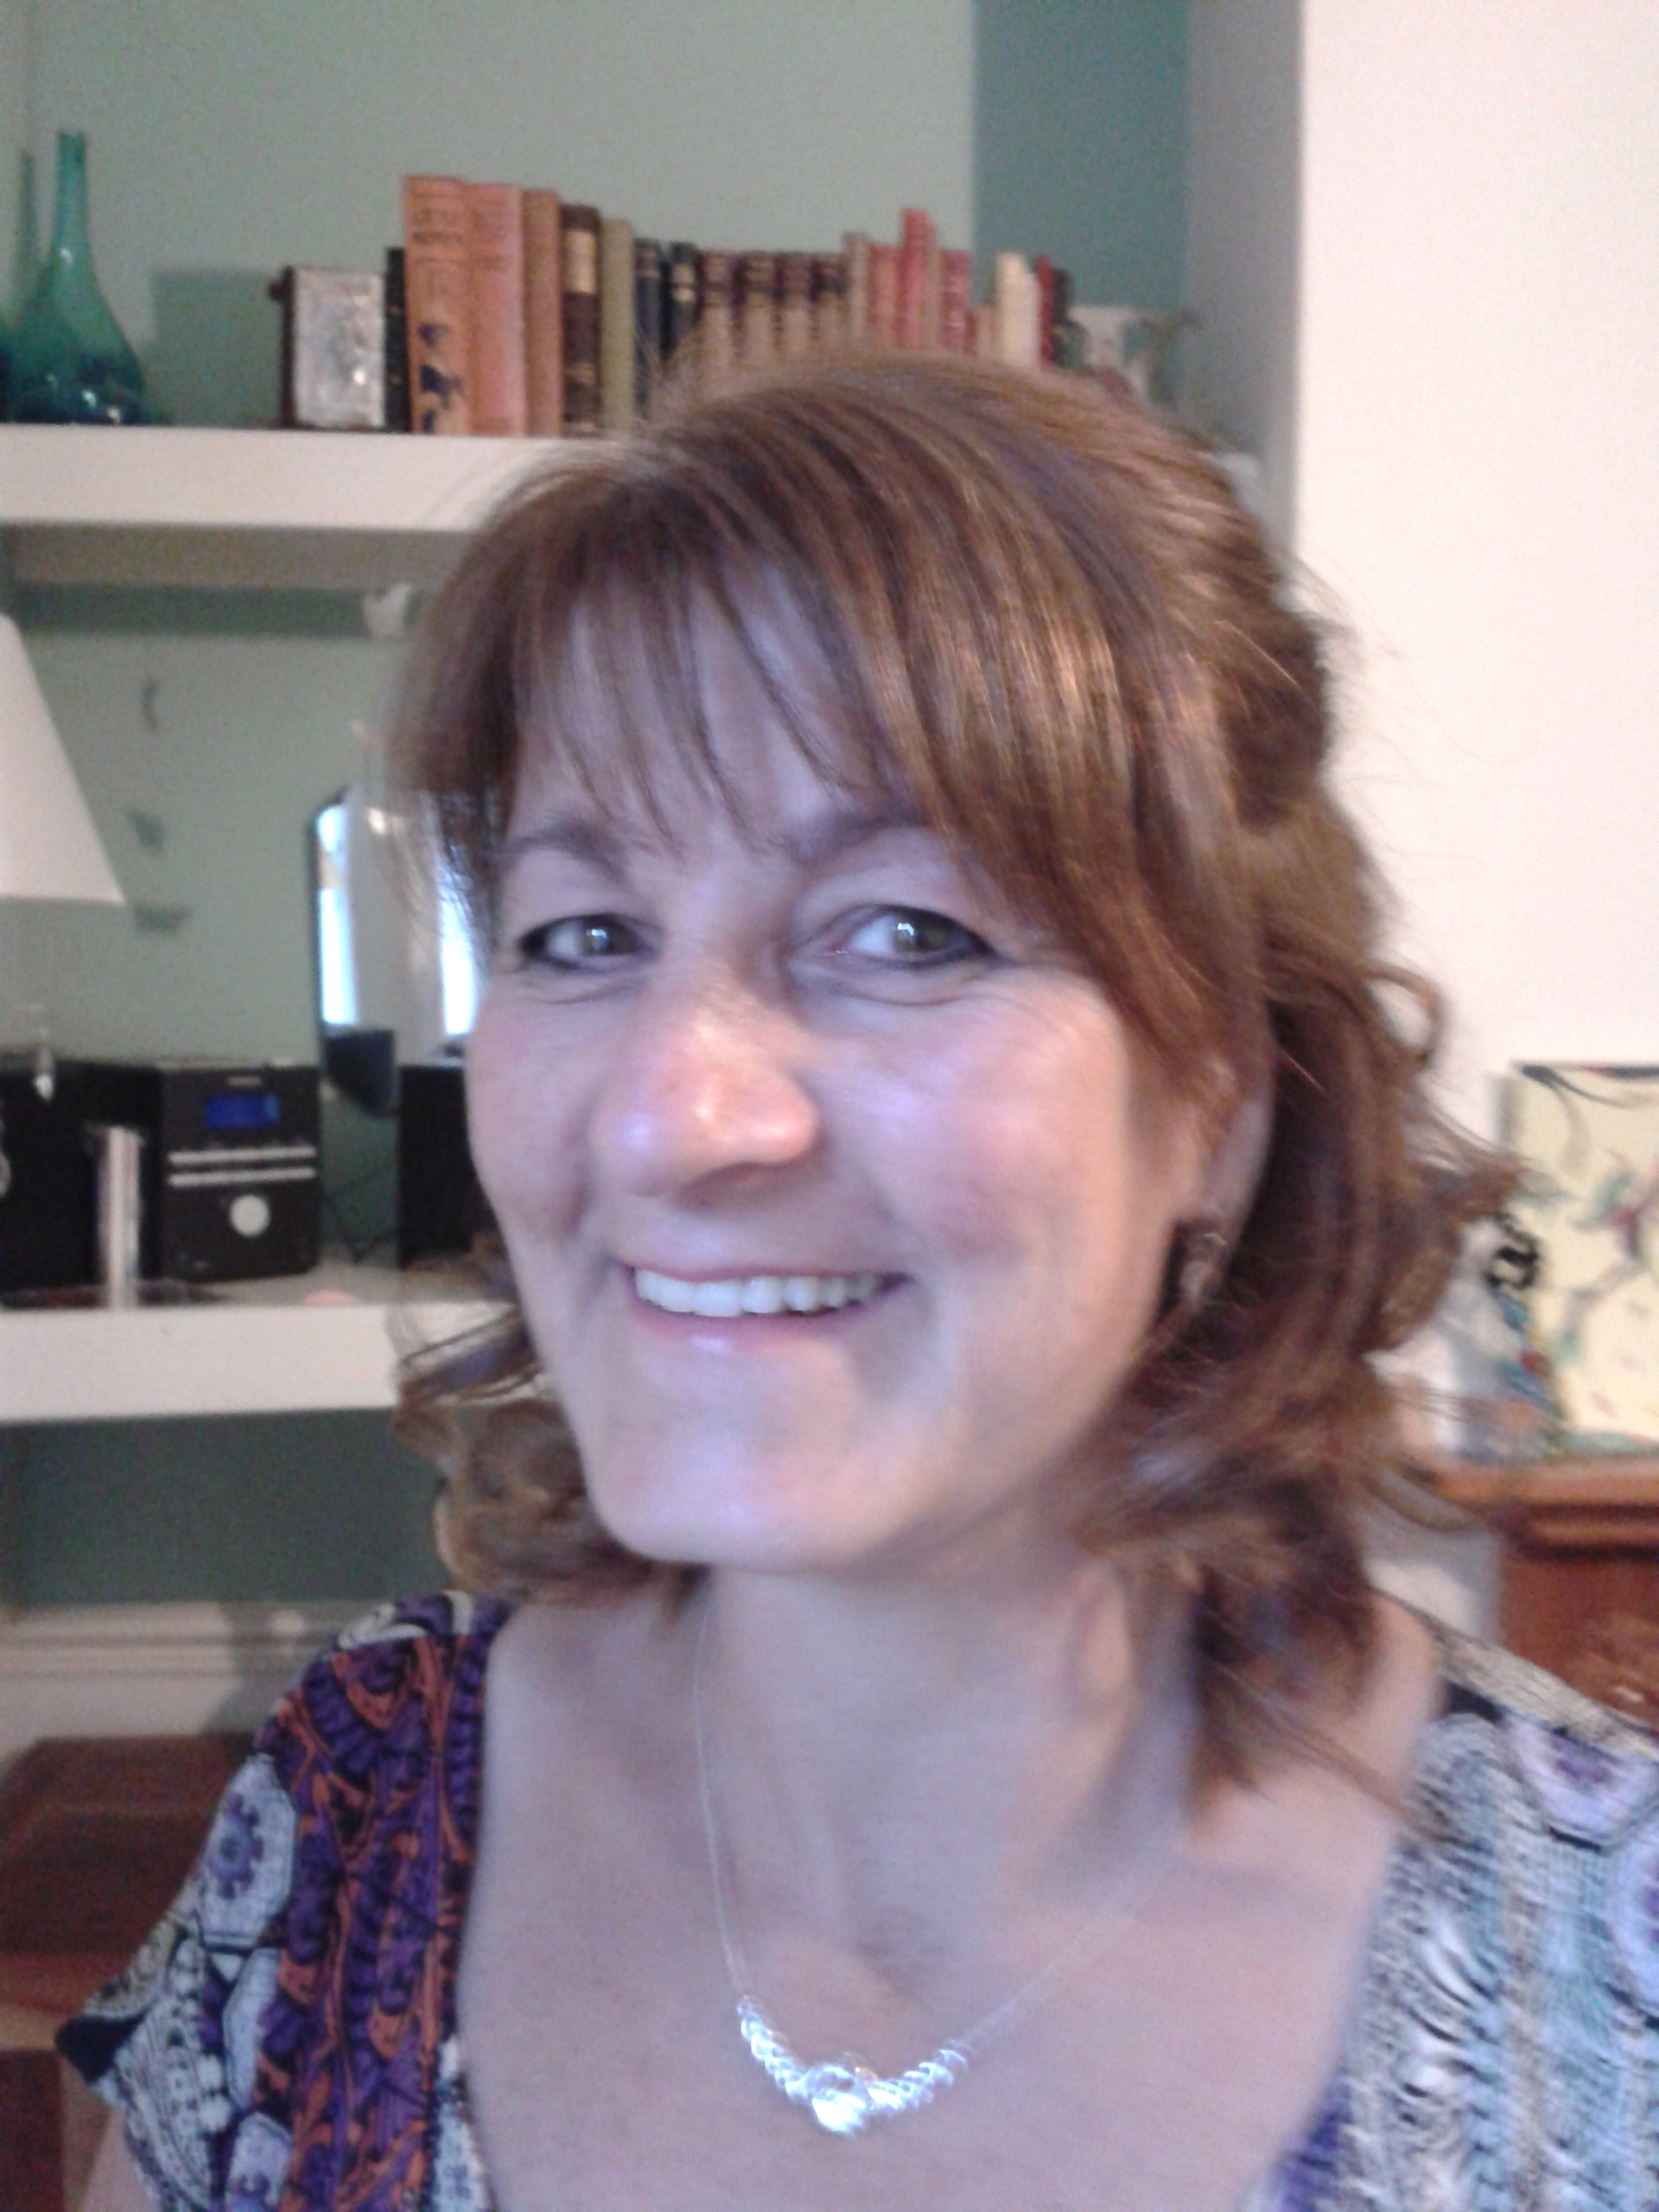 Meet the Therapist: Debbie Foers